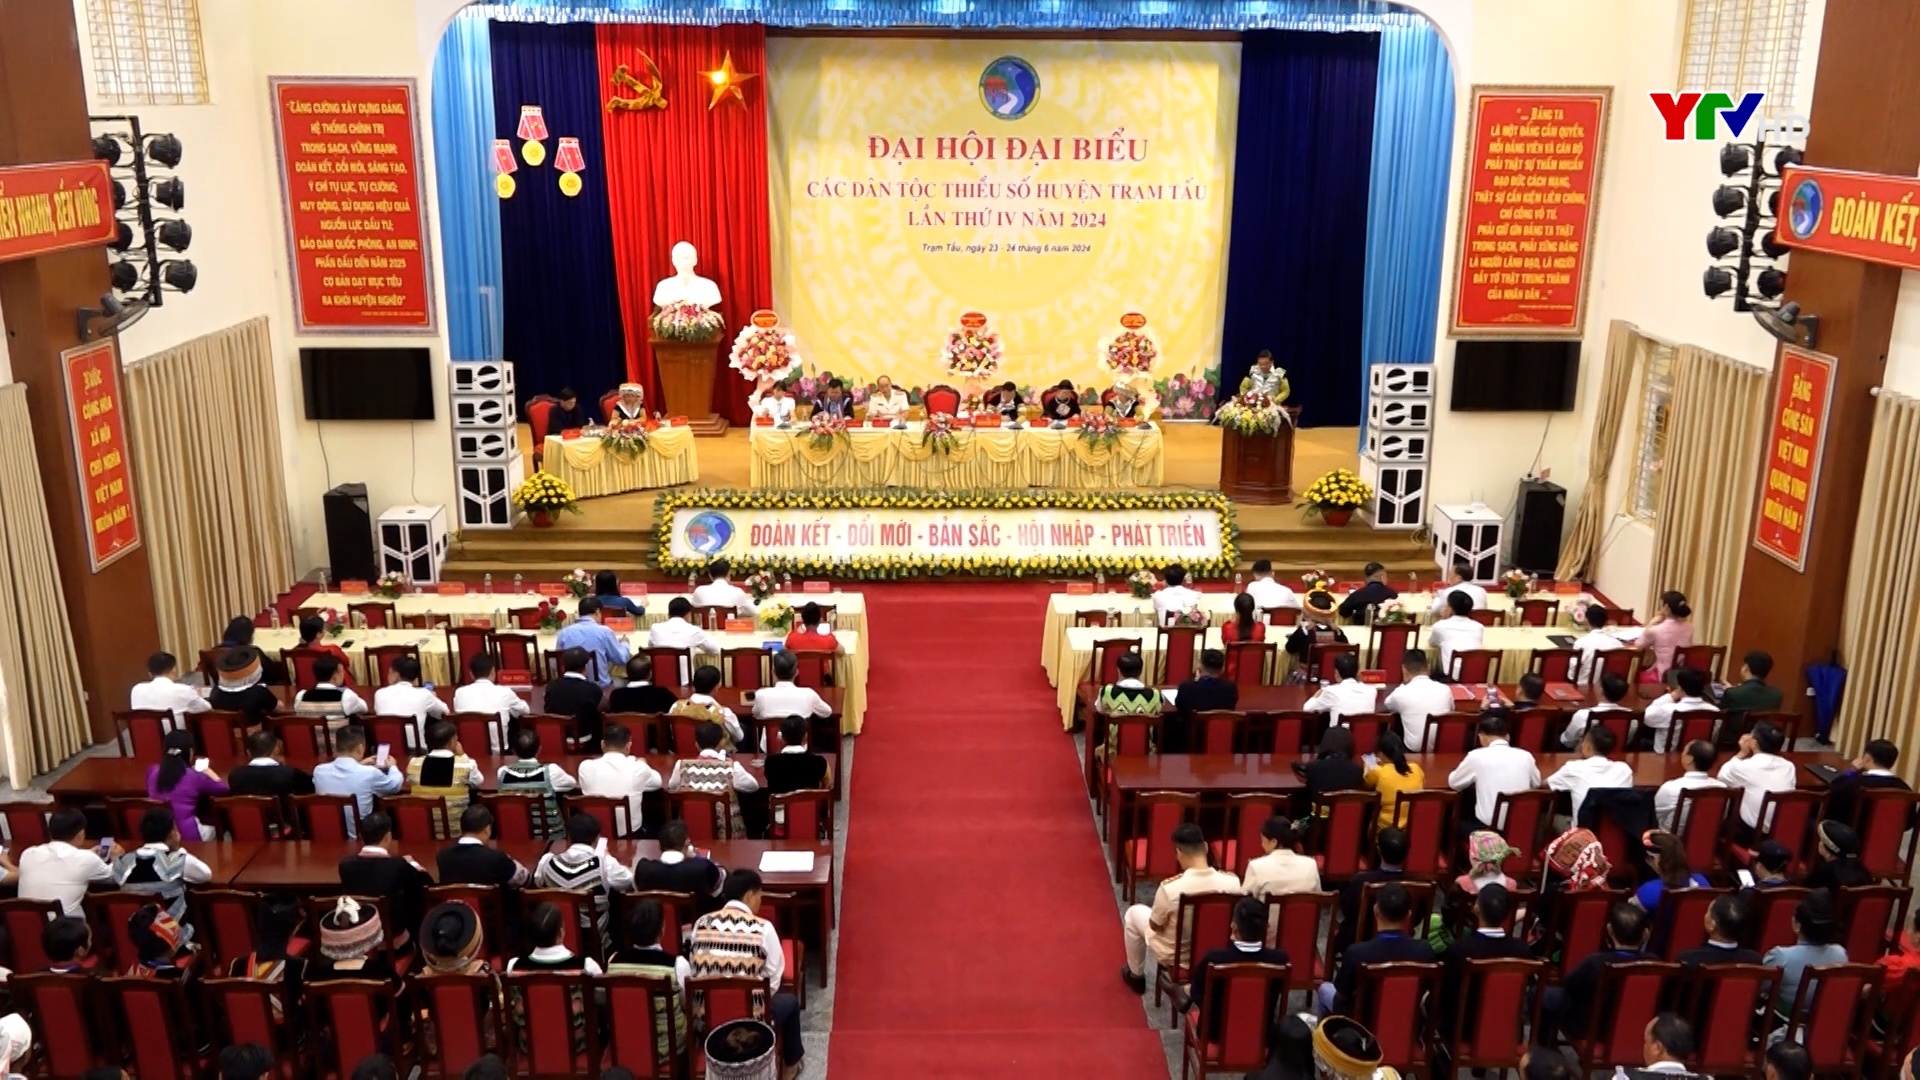 Huyện Trạm Tấu tổ chức thành công Đại hội đại biểu các dân tộc thiểu số lần thứ IV năm 2024